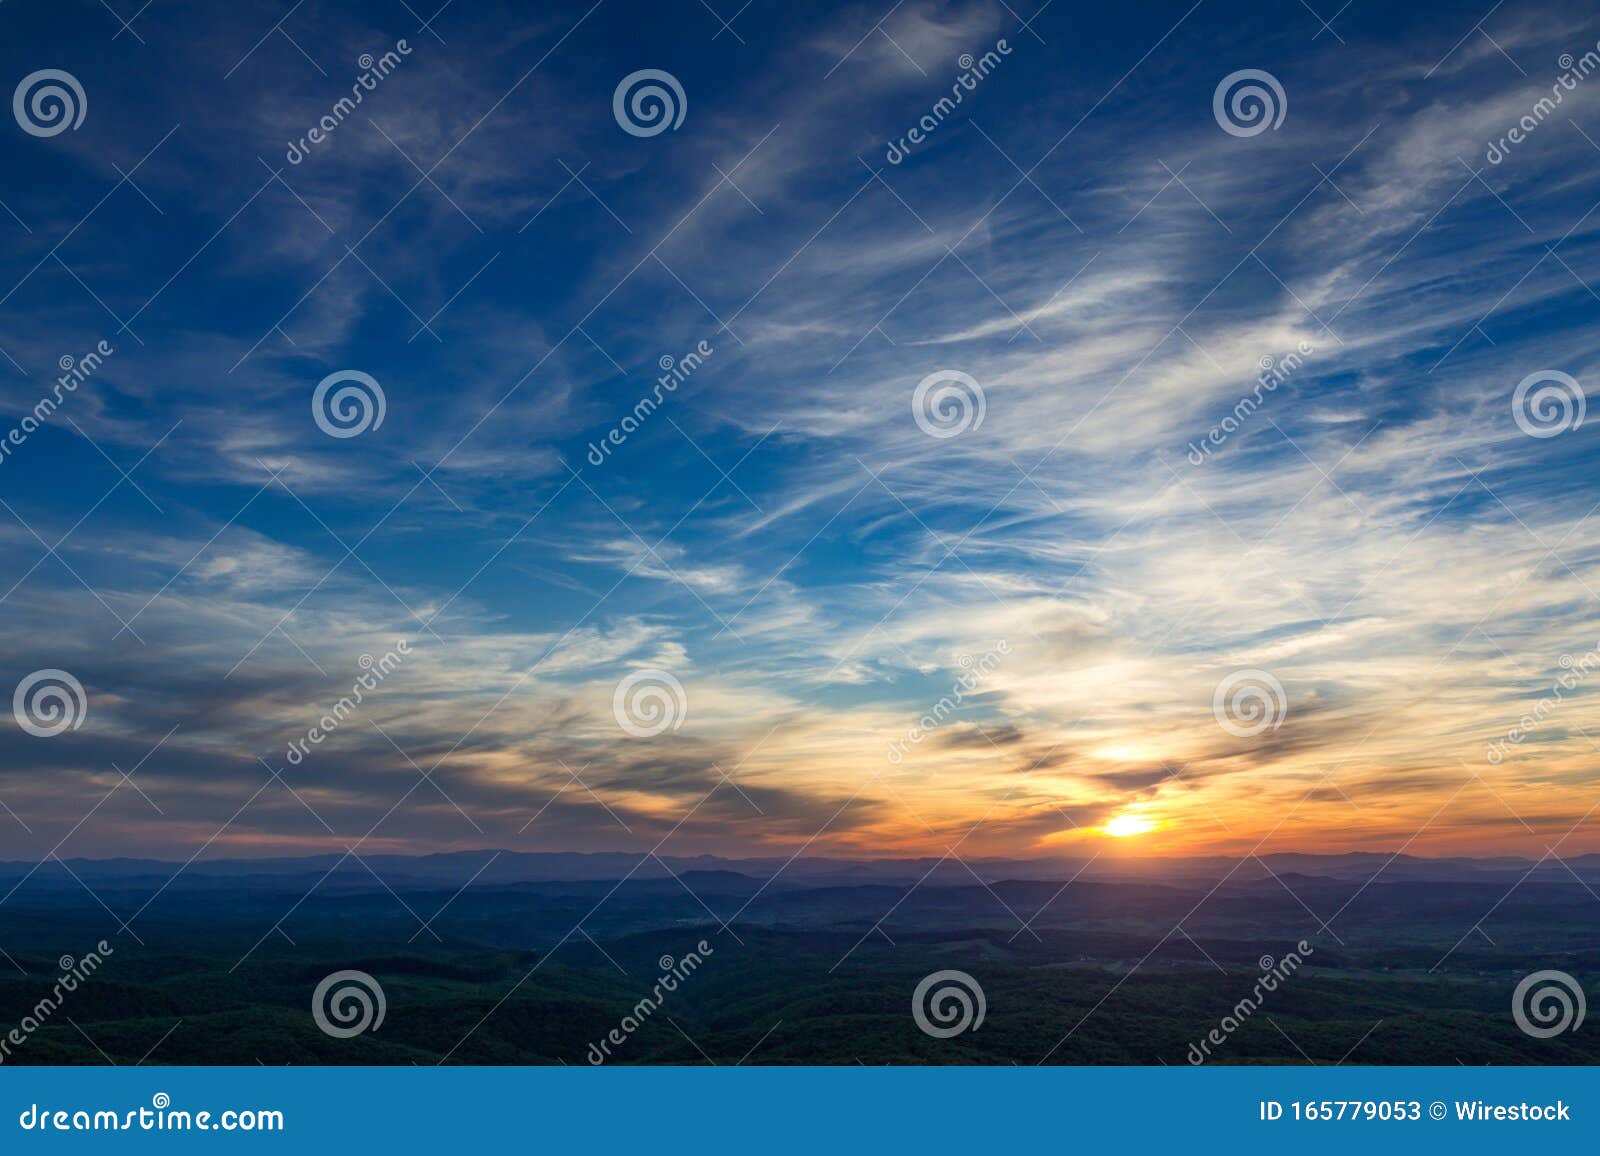 在阴云的天空中 夕阳的壮丽景色与金色的太阳 是壁纸的完美选择库存图片 图片包括有海洋 五颜六色